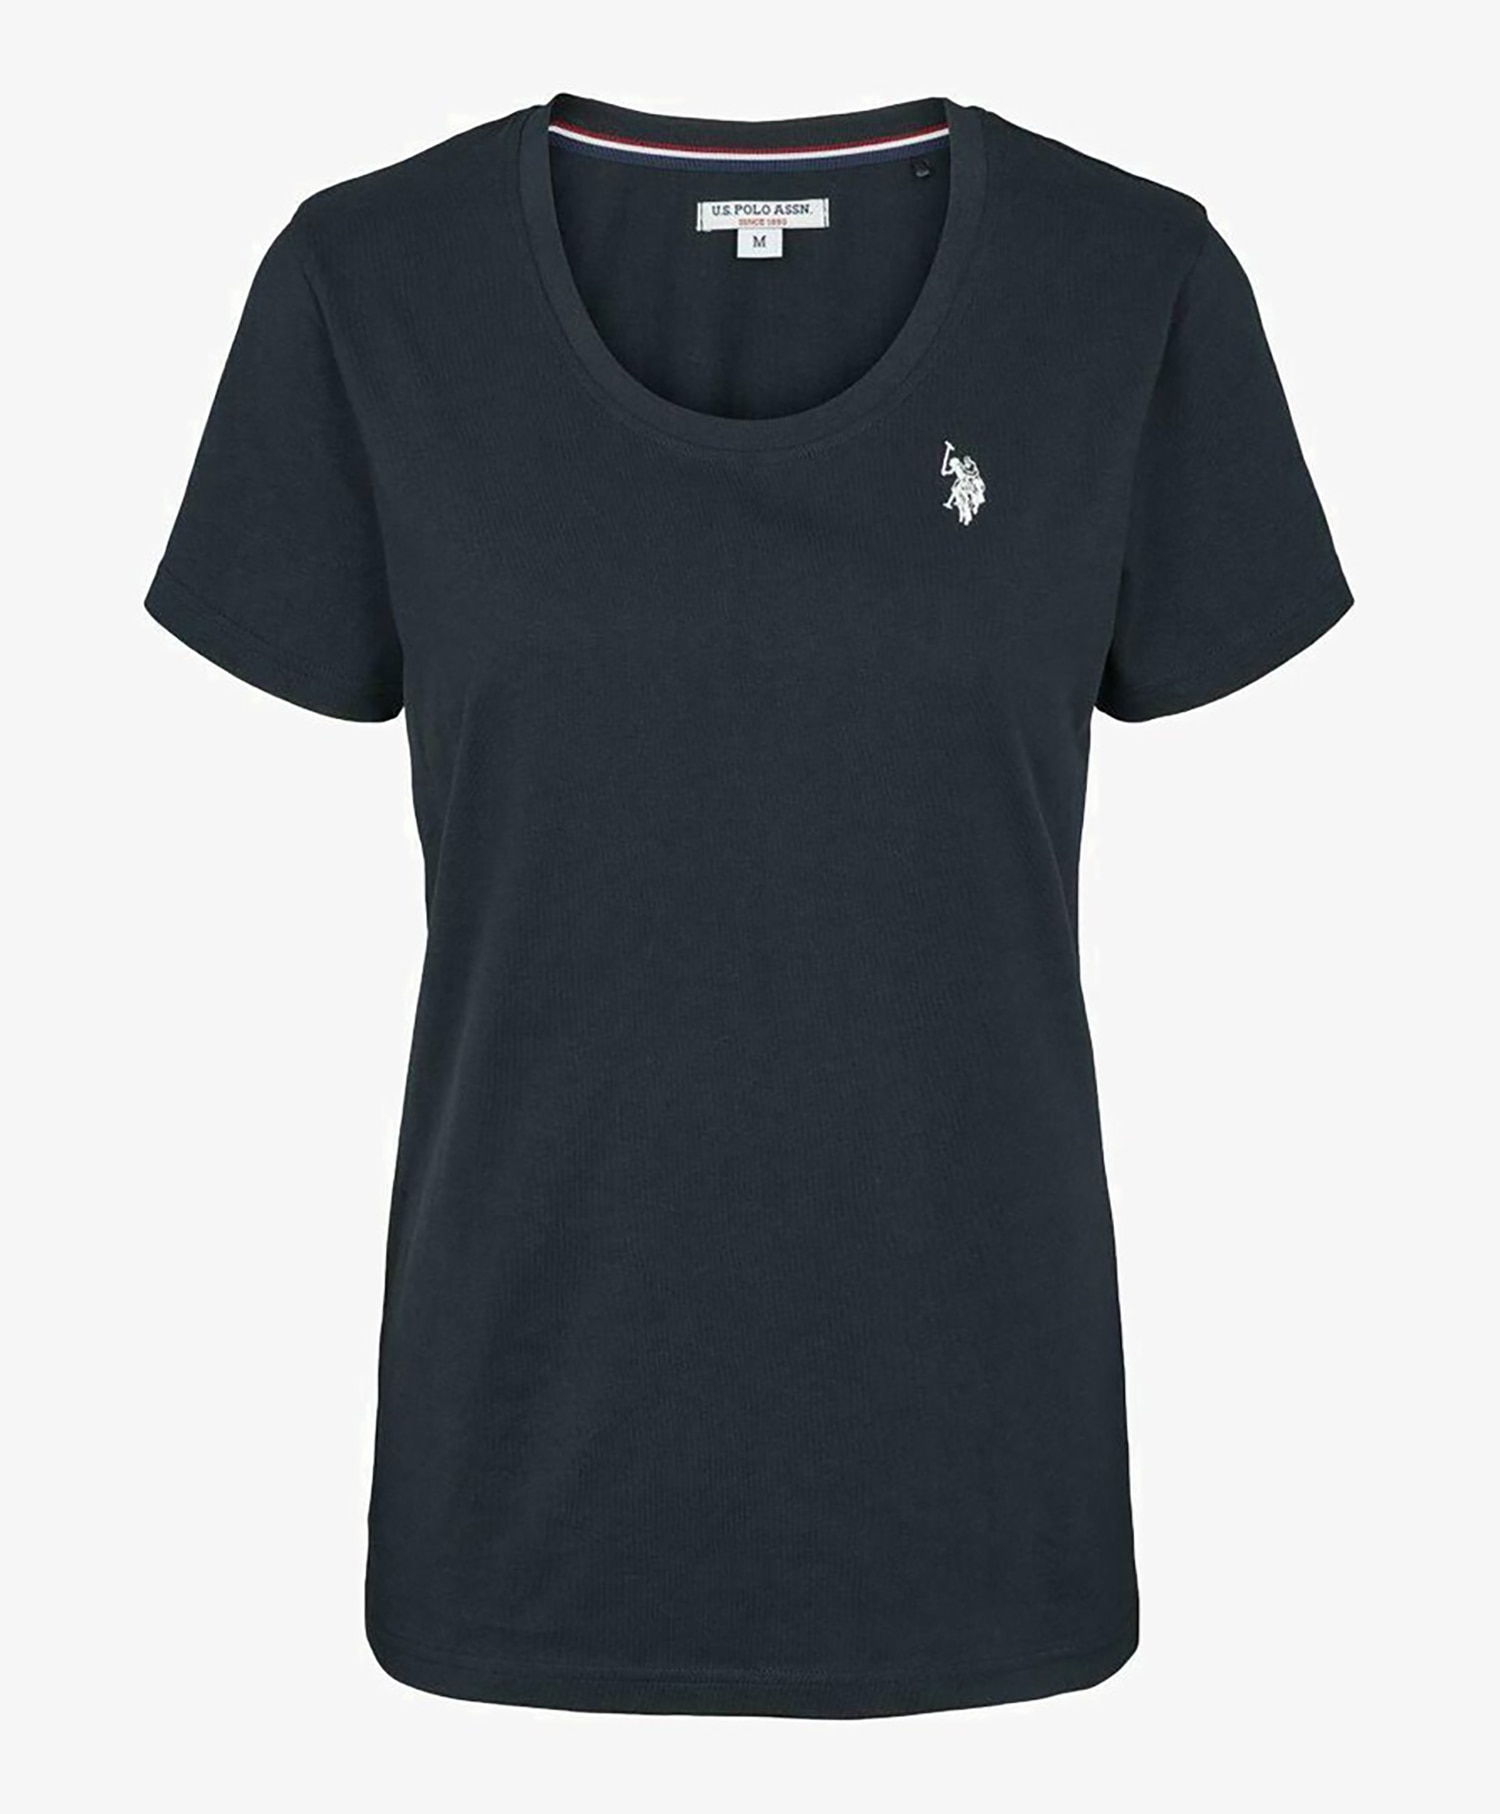 U.S Polo Amy T-shirt